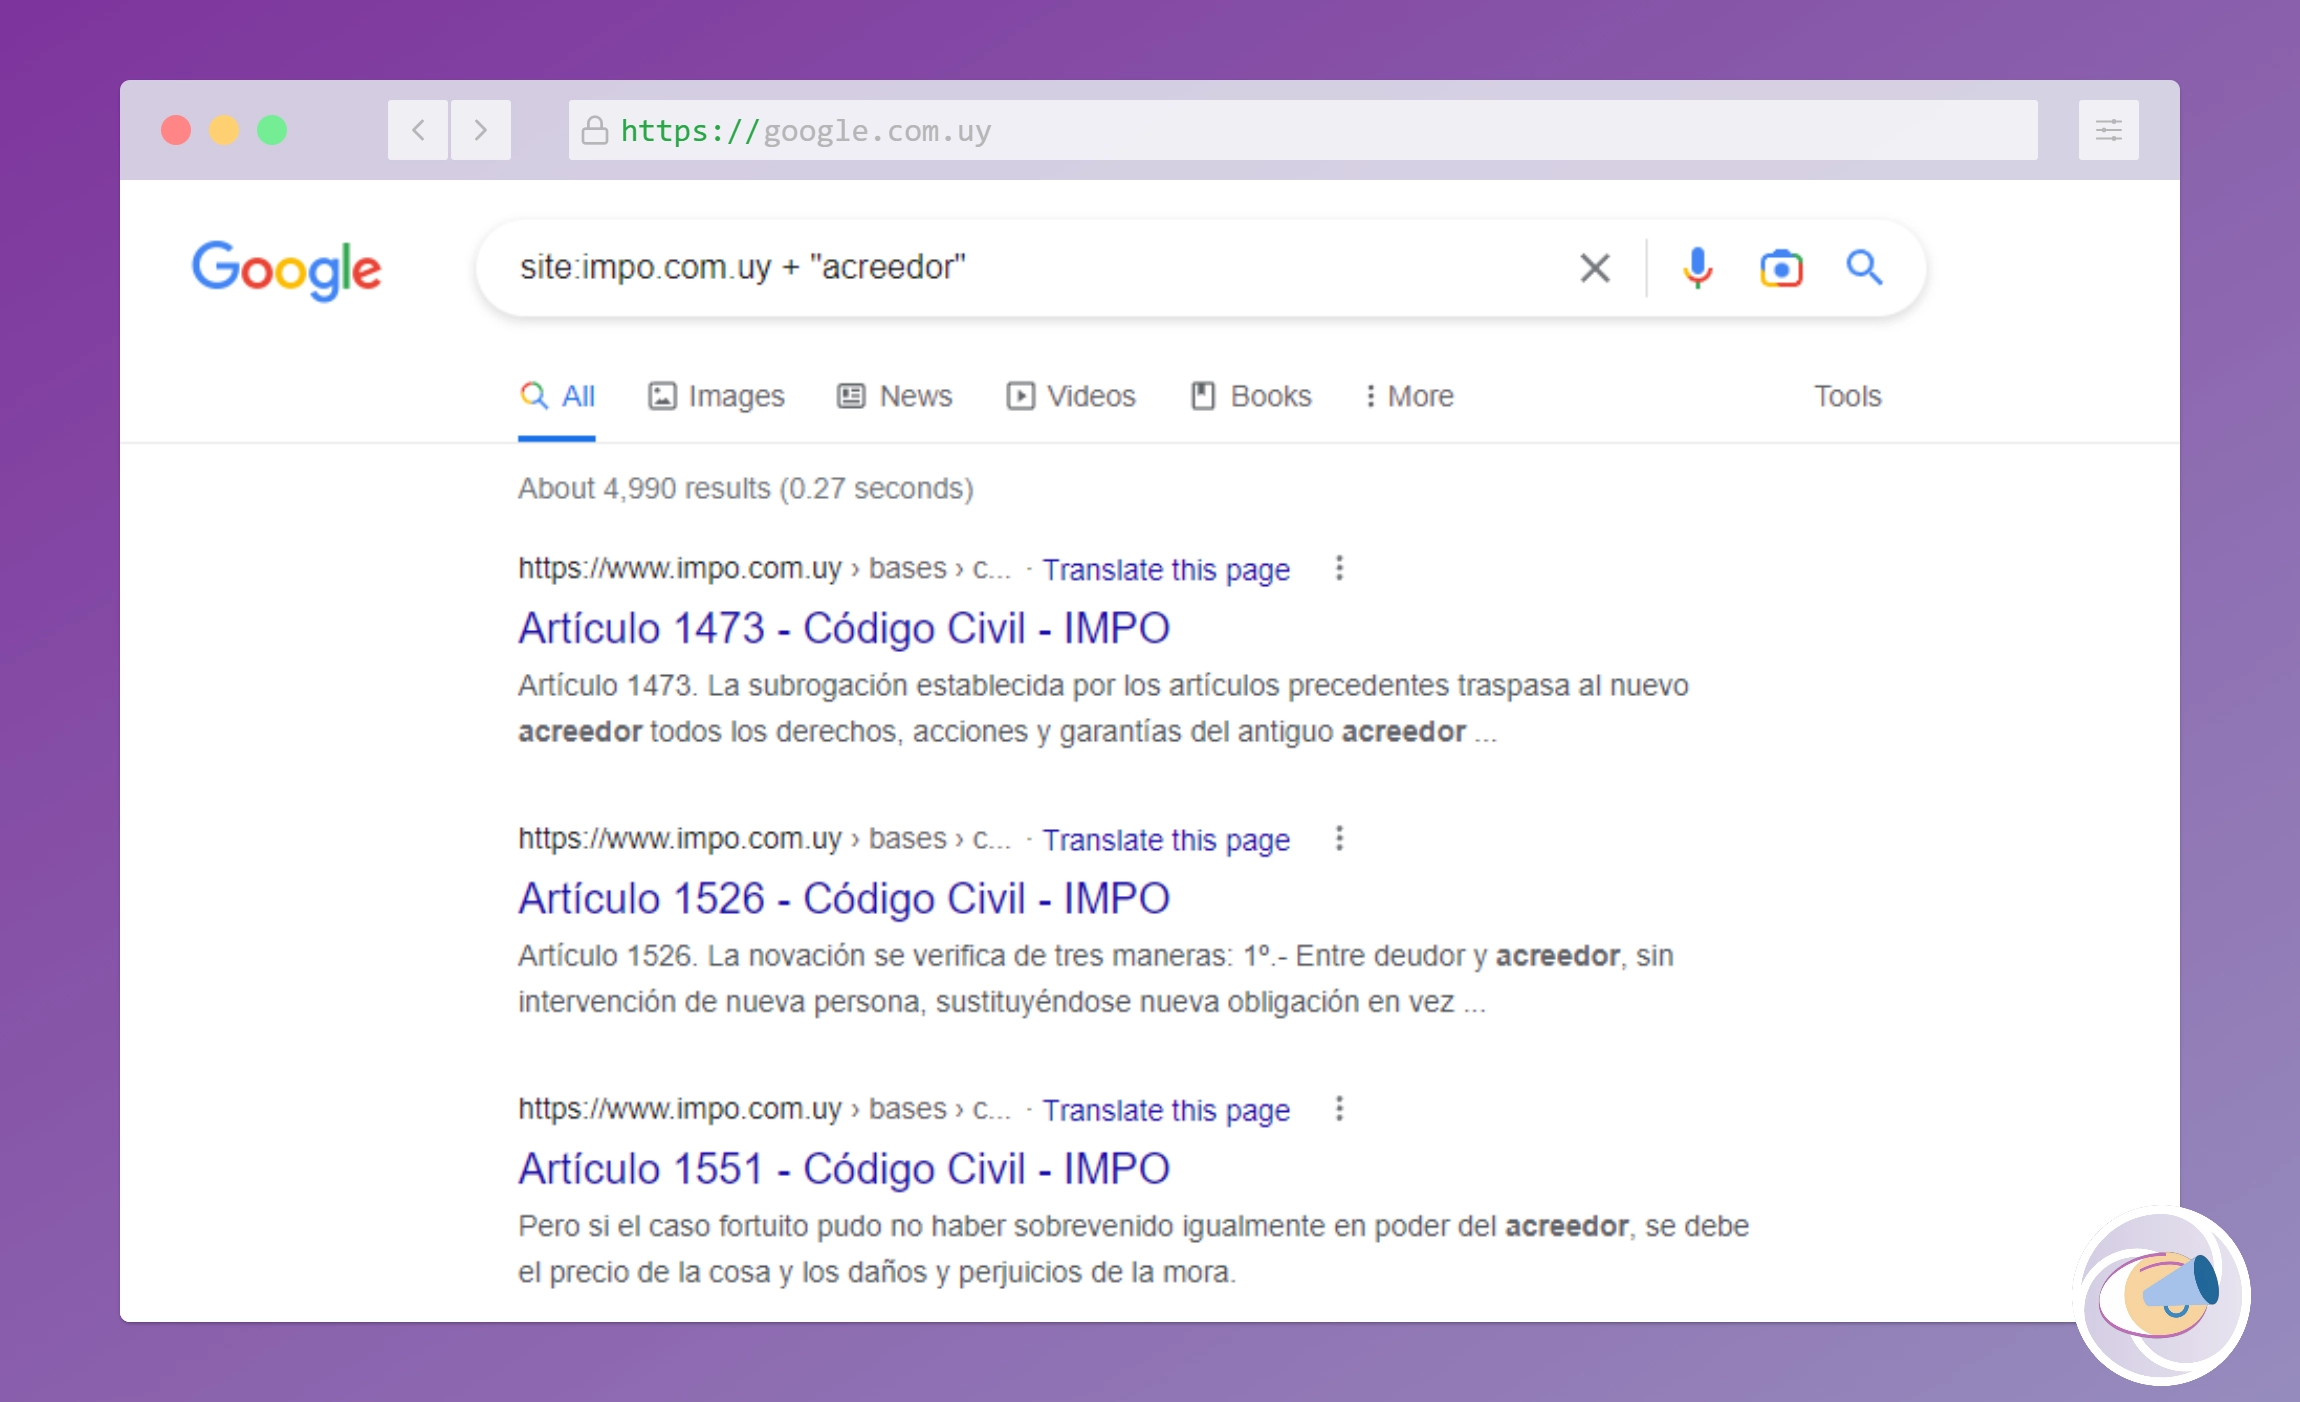 Resultados de búsqueda de la palabra "acreedor" en la página del IMPO, Uruguay.